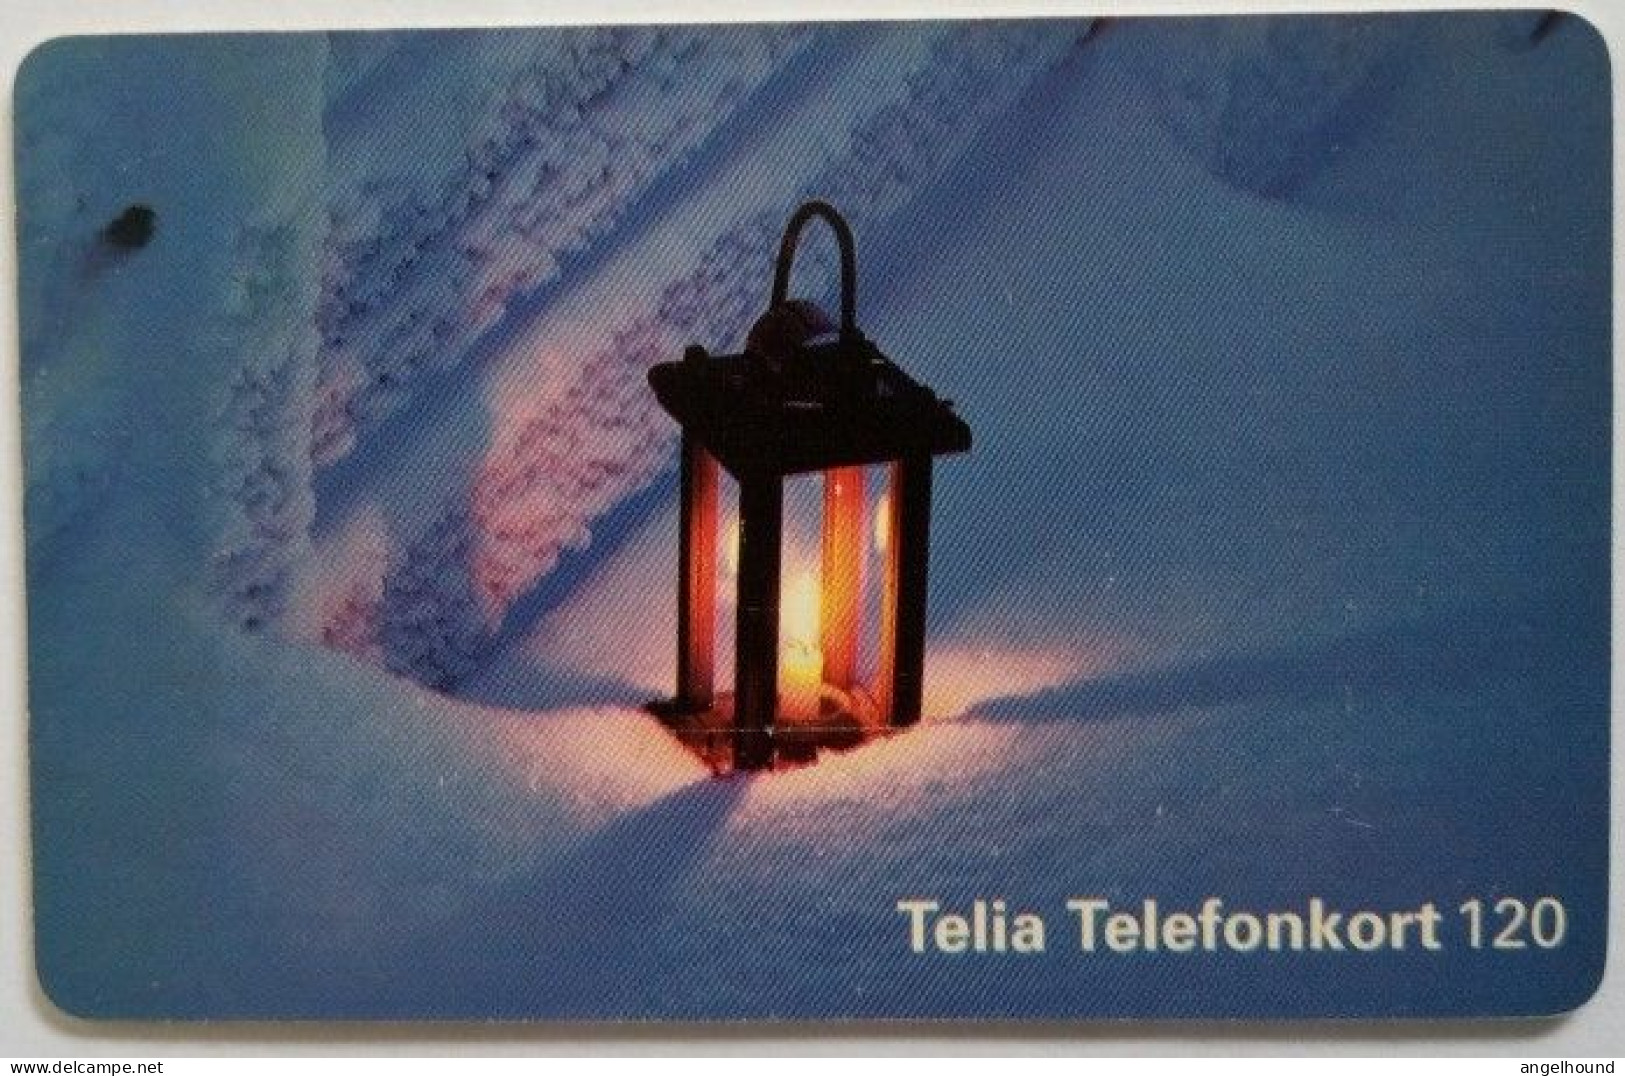 Sweden 120Mk. Chip Card - Lantern In A Snow - Sweden